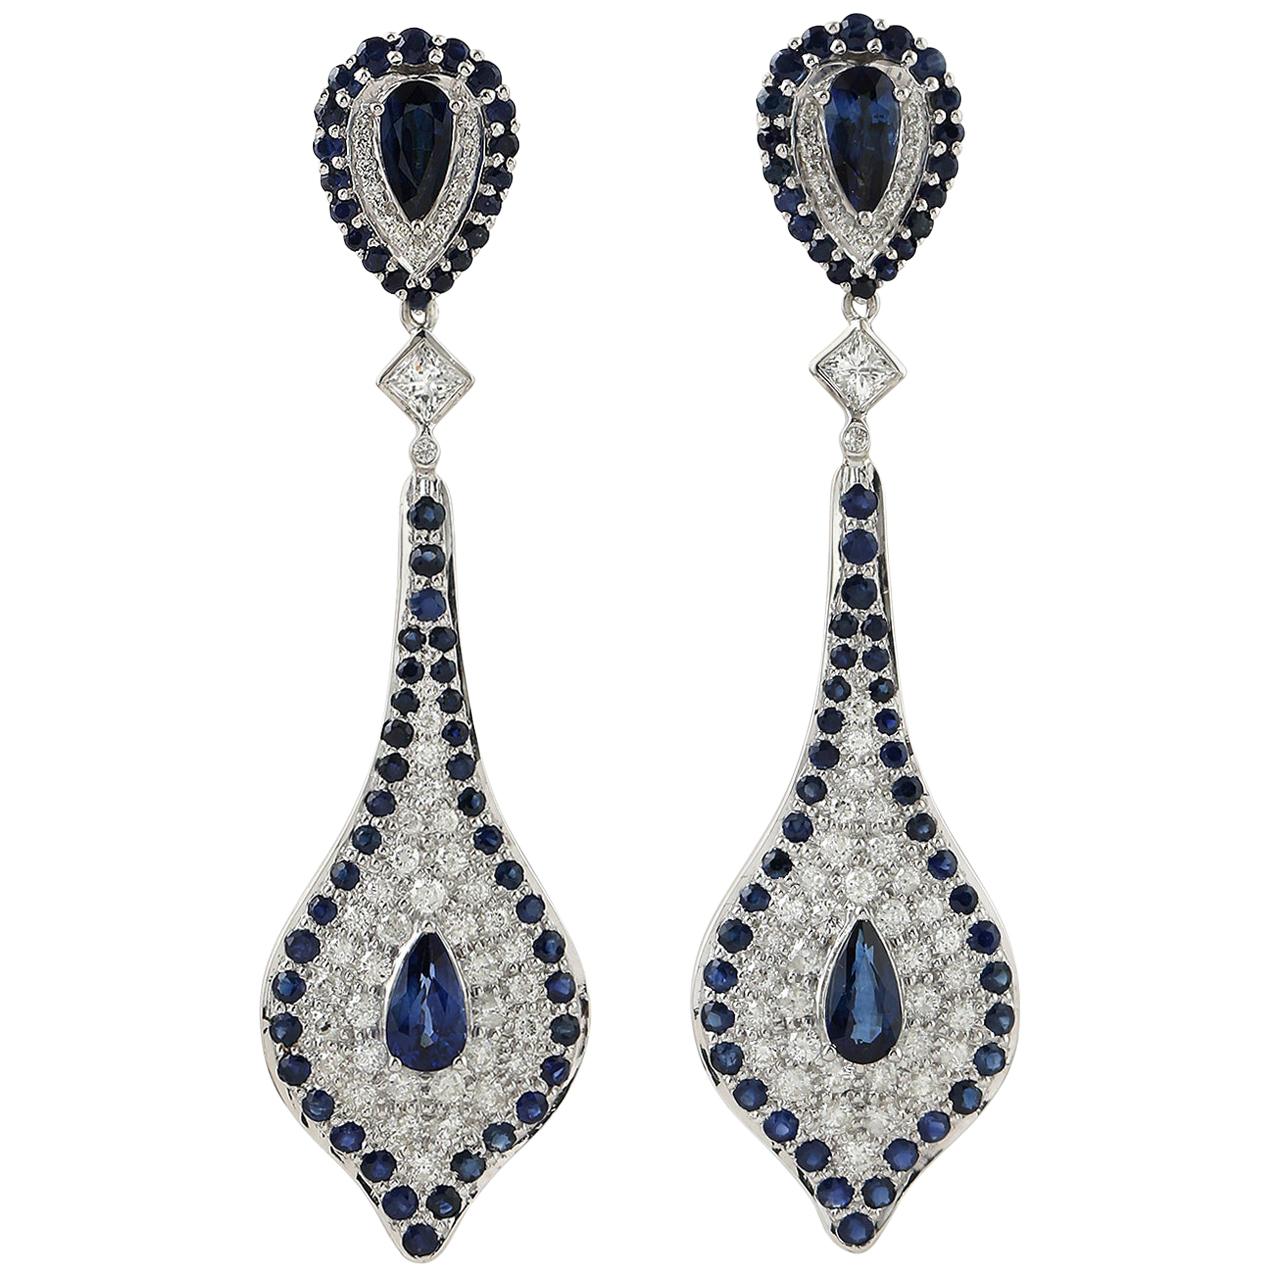 Boucles d'oreilles en or 18 carats avec saphir bleu et diamants